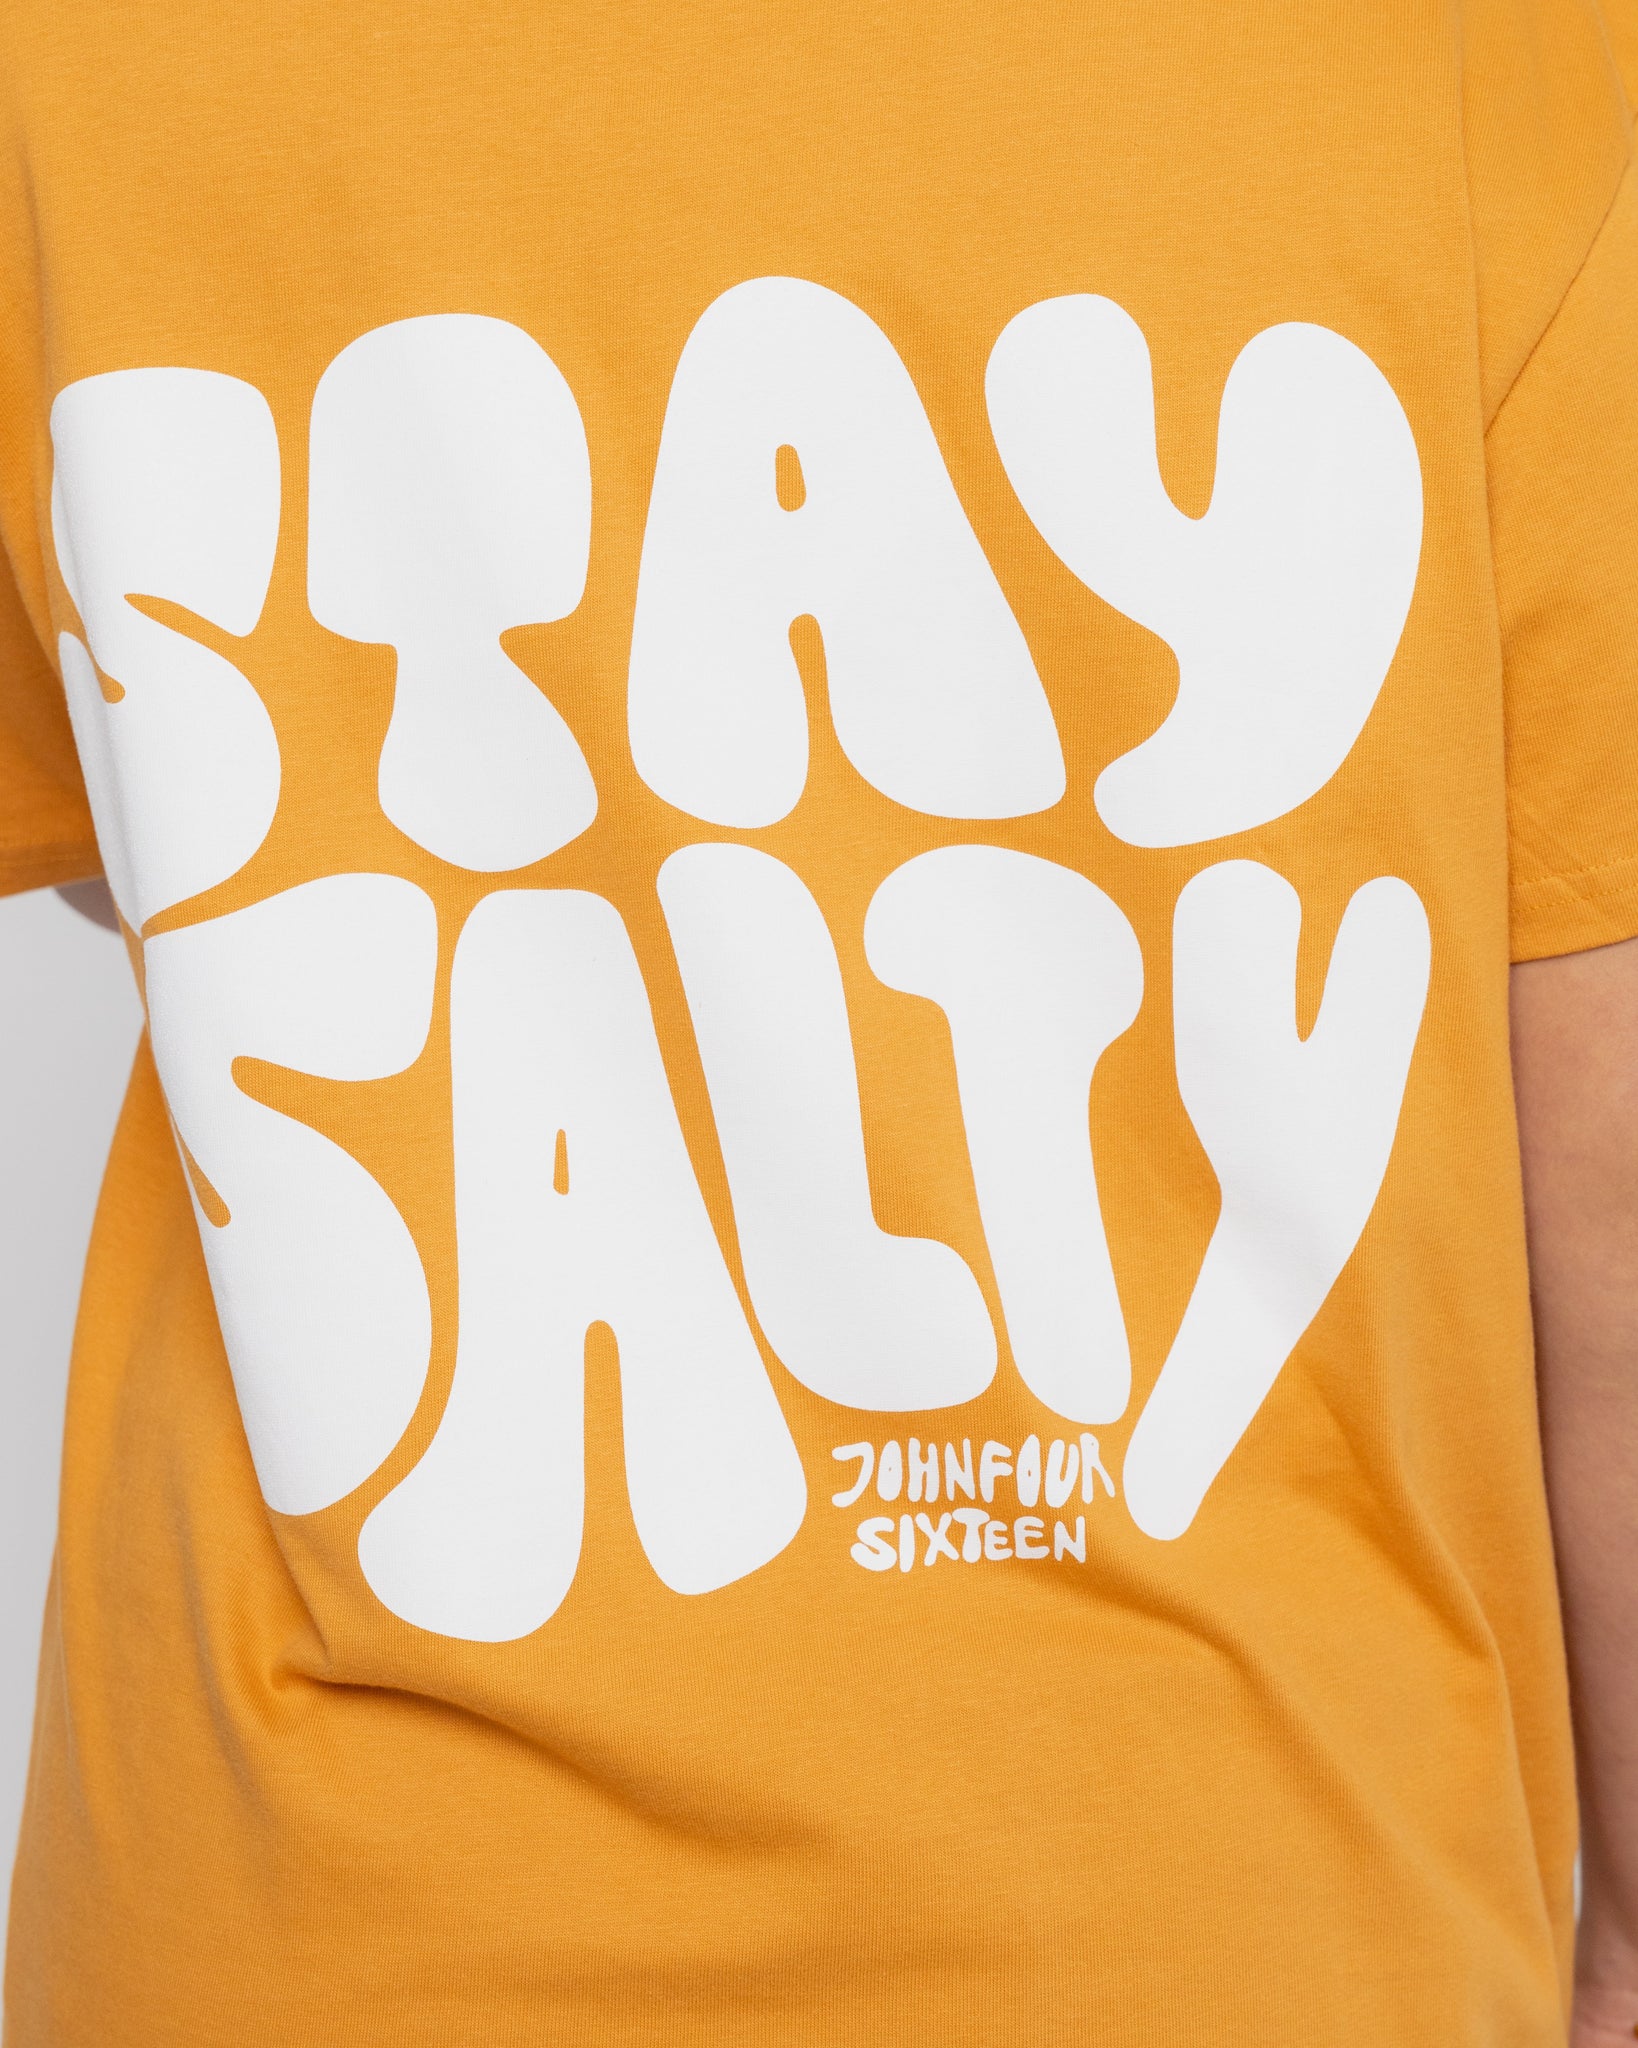 Stay Salty Tee Orange